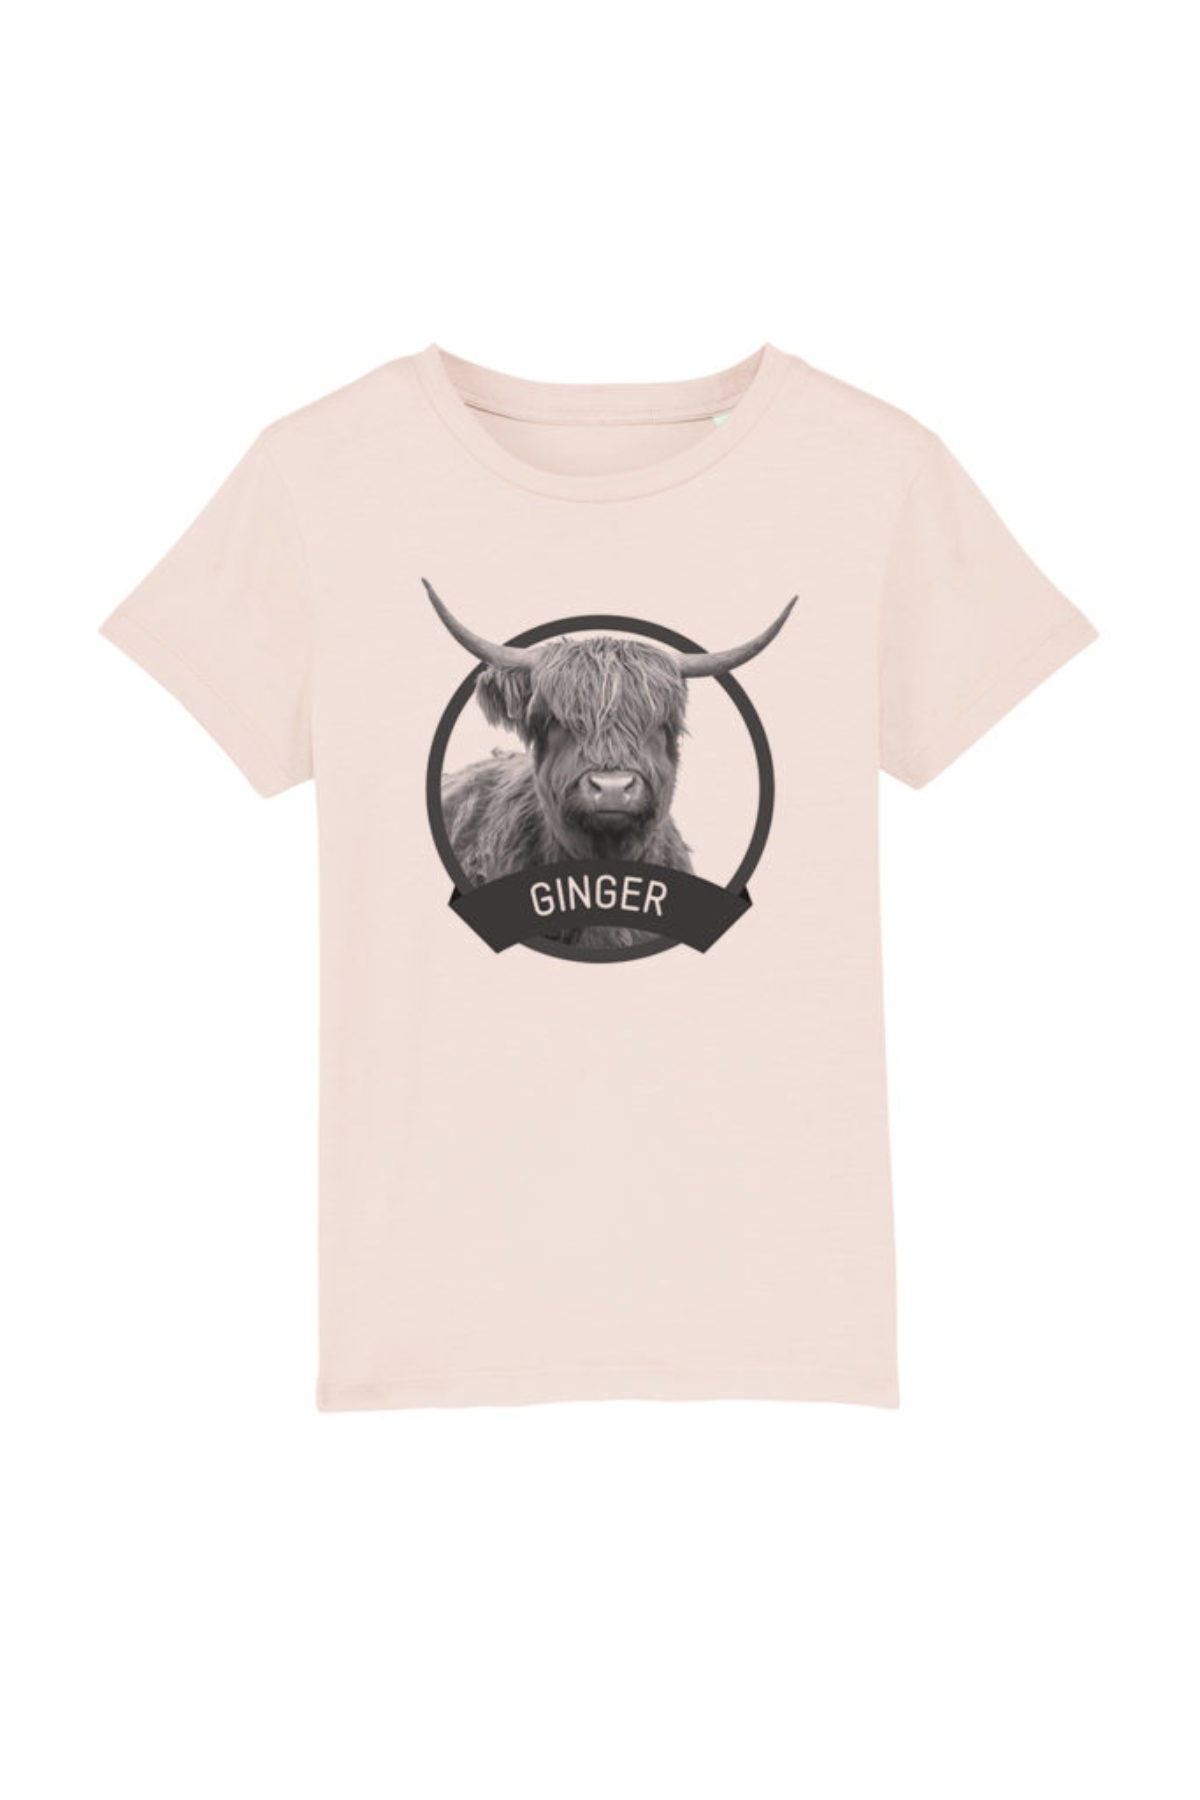 T-shirt enfant - Ginger